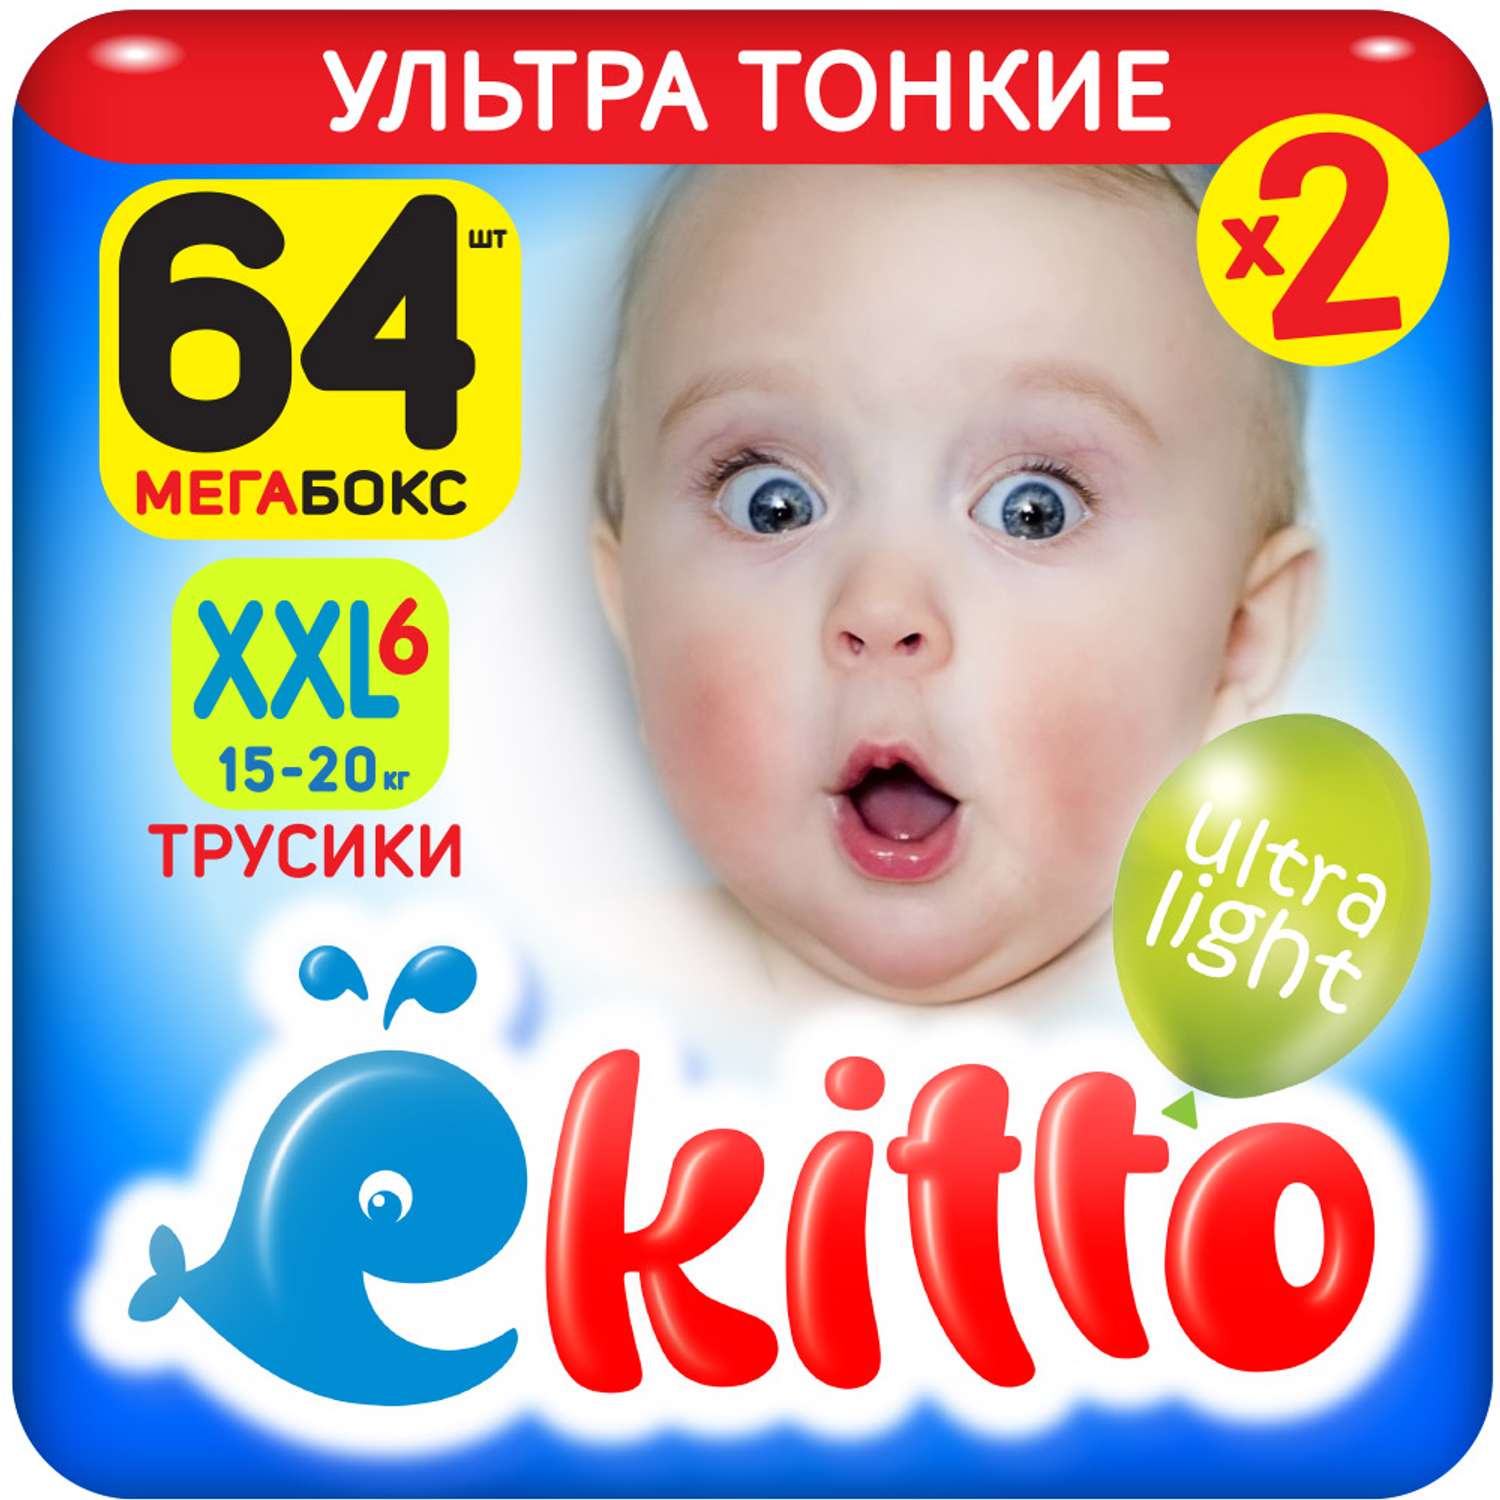 Подгузники-трусики Ekitto 6 размер XXL для новорожденных детей ультратонкие от 15-20 кг 64 шт - фото 1